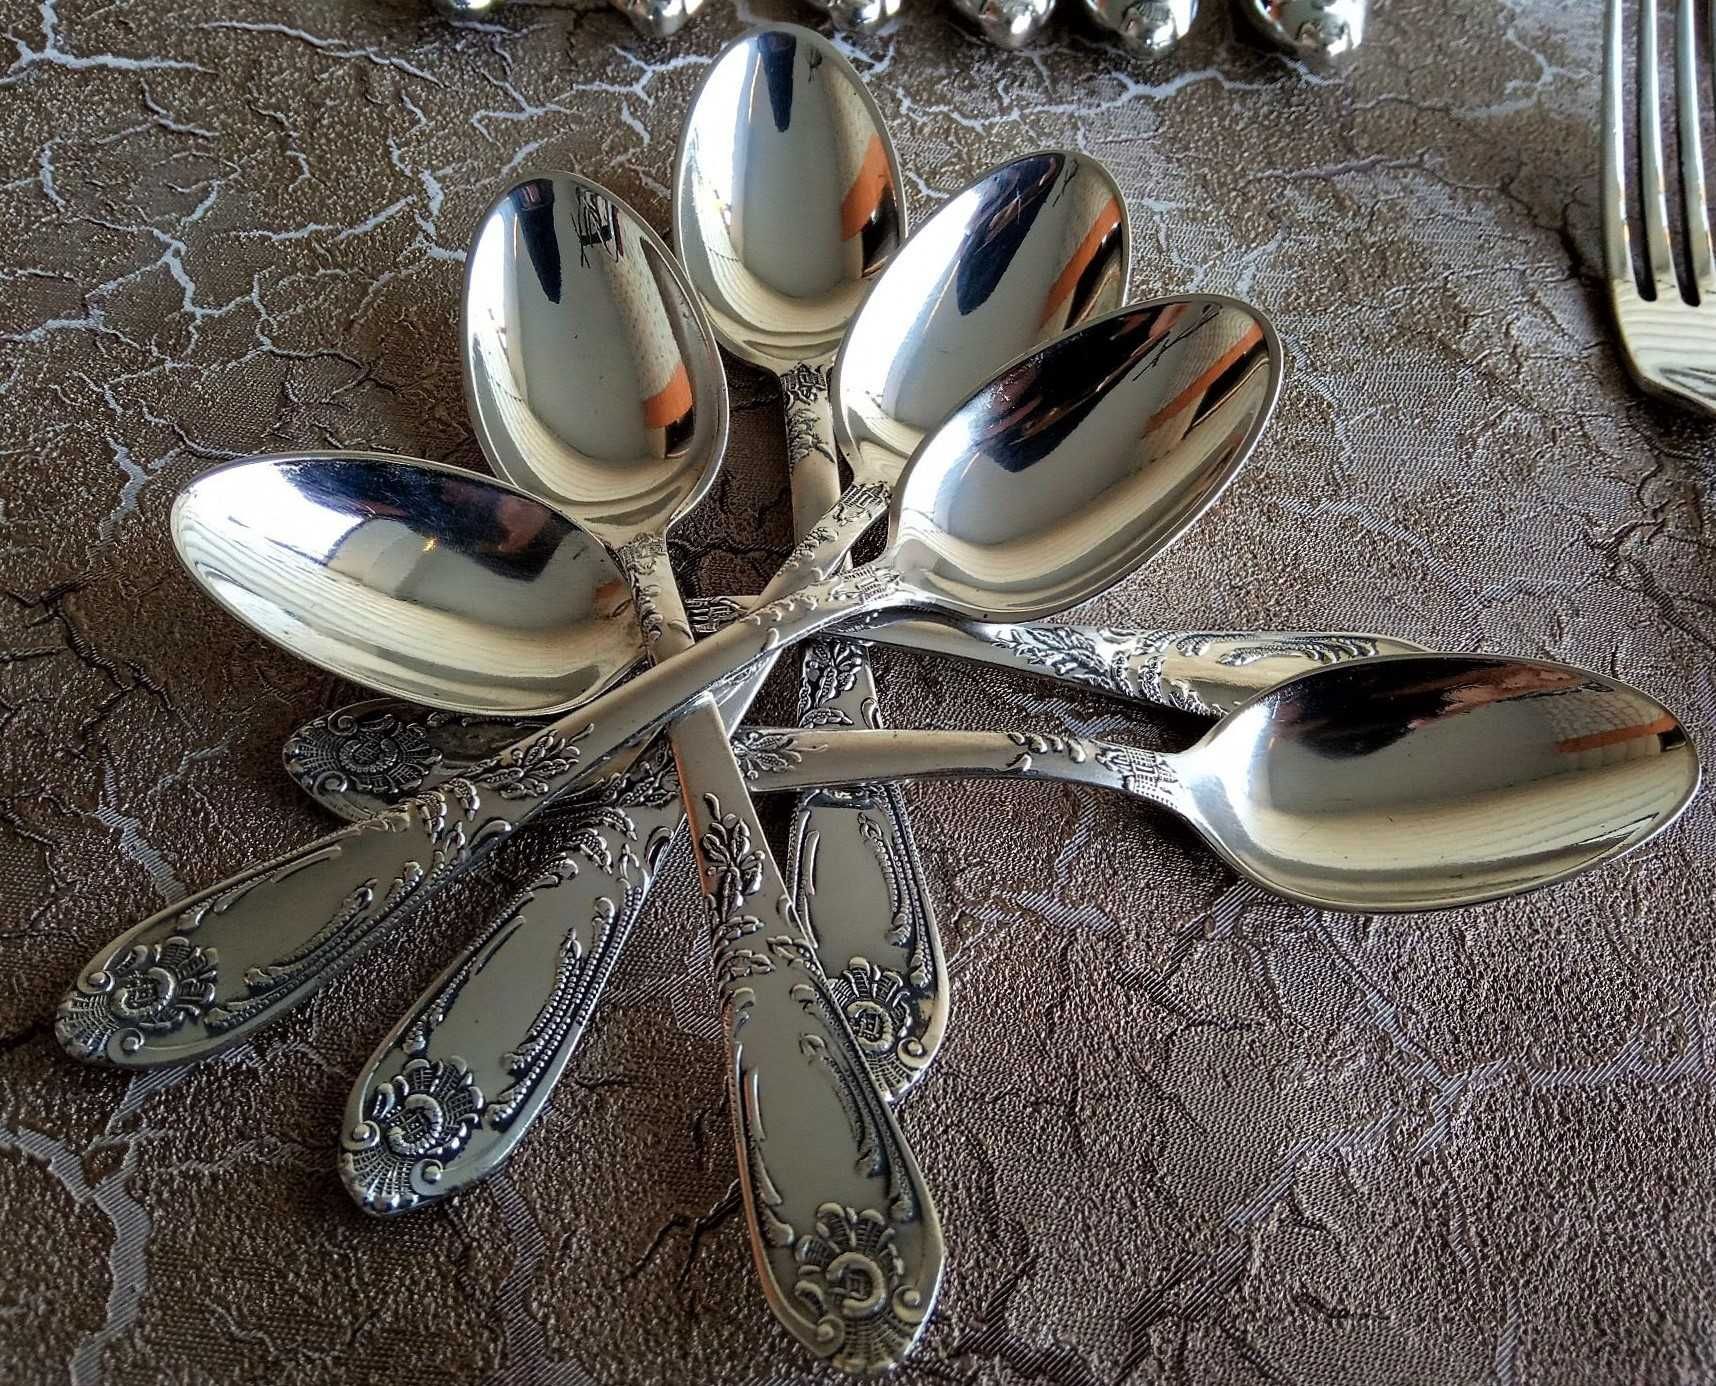 Ложки вилки ножи , покрыт серебром набор 42 прибора времен СССР.